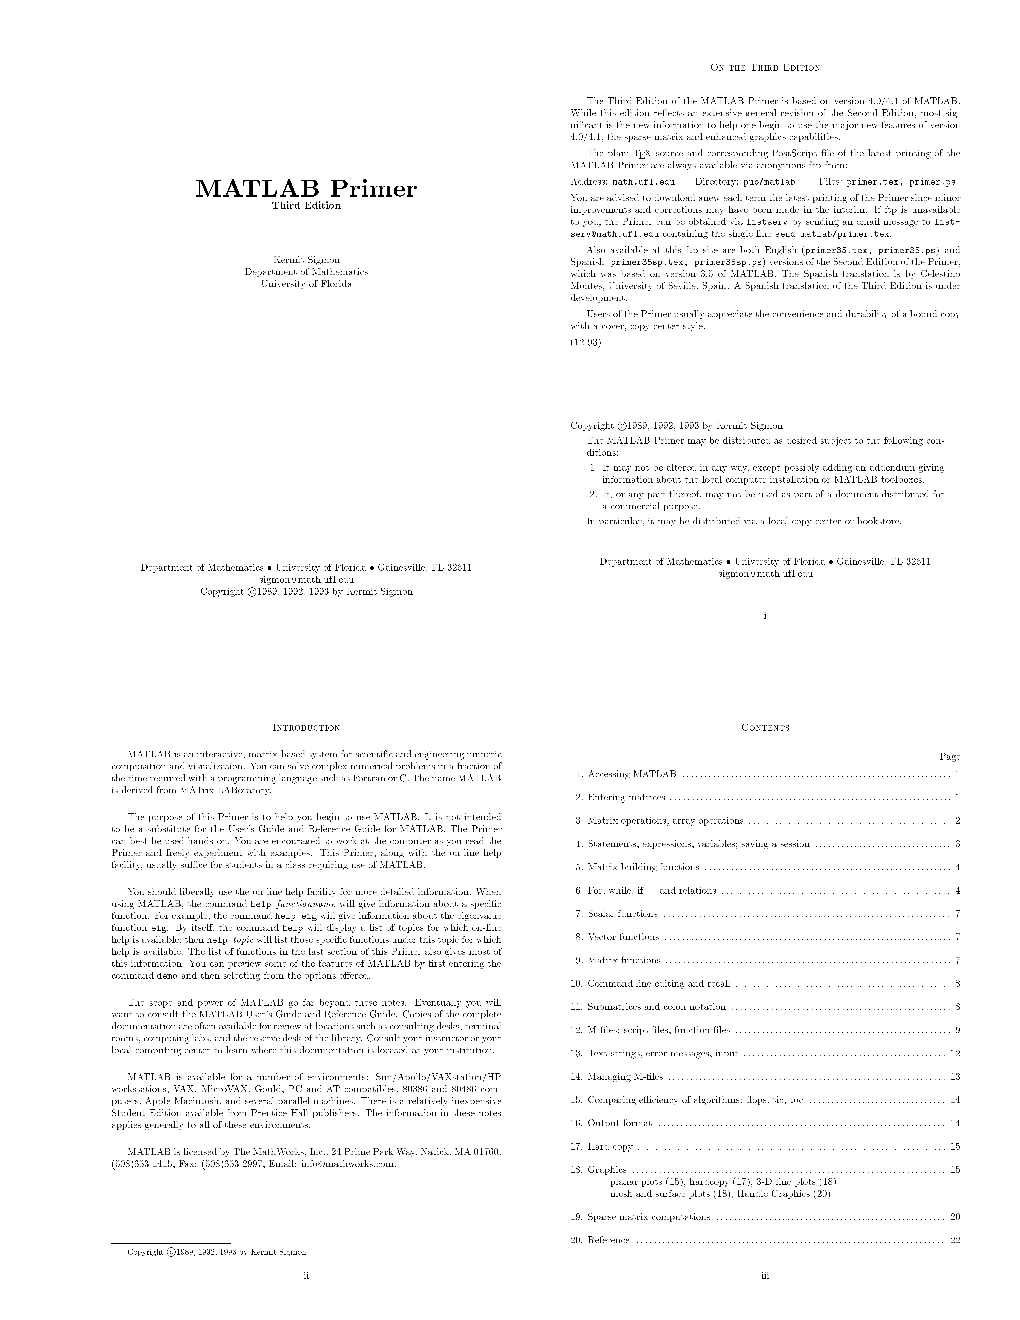 MATLAB Primer Is Based on Version 4.0/4.1 of MATLAB